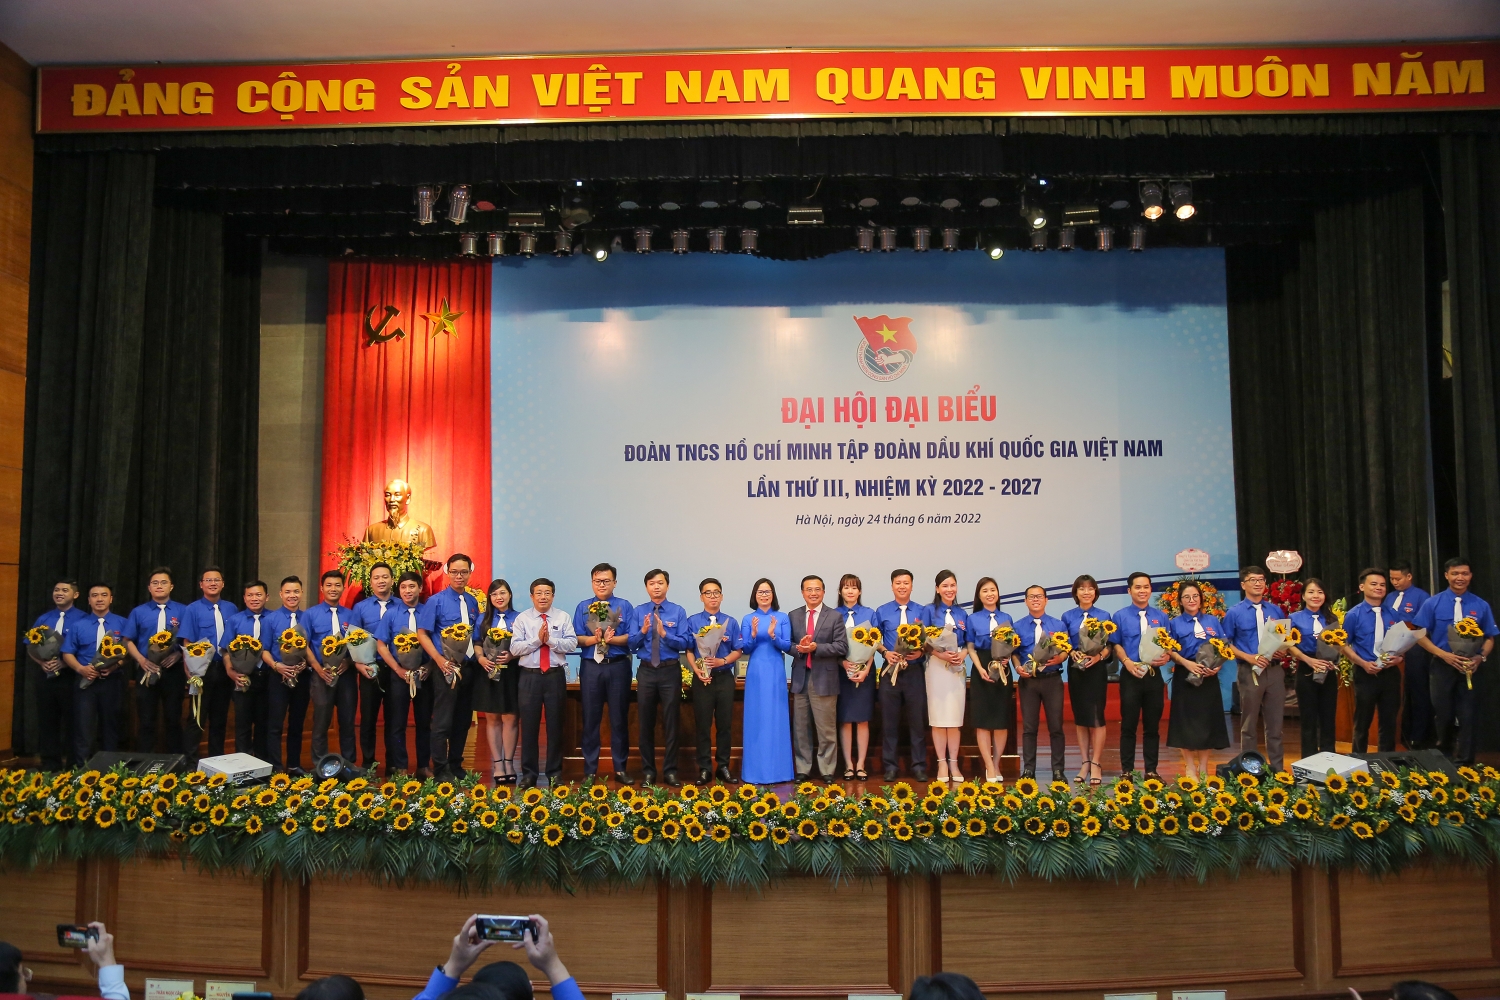 Tổ chức thành công Đại hội đại biểu Đoàn Tập đoàn lần thứ III, nhiệm kỳ 2022-2027